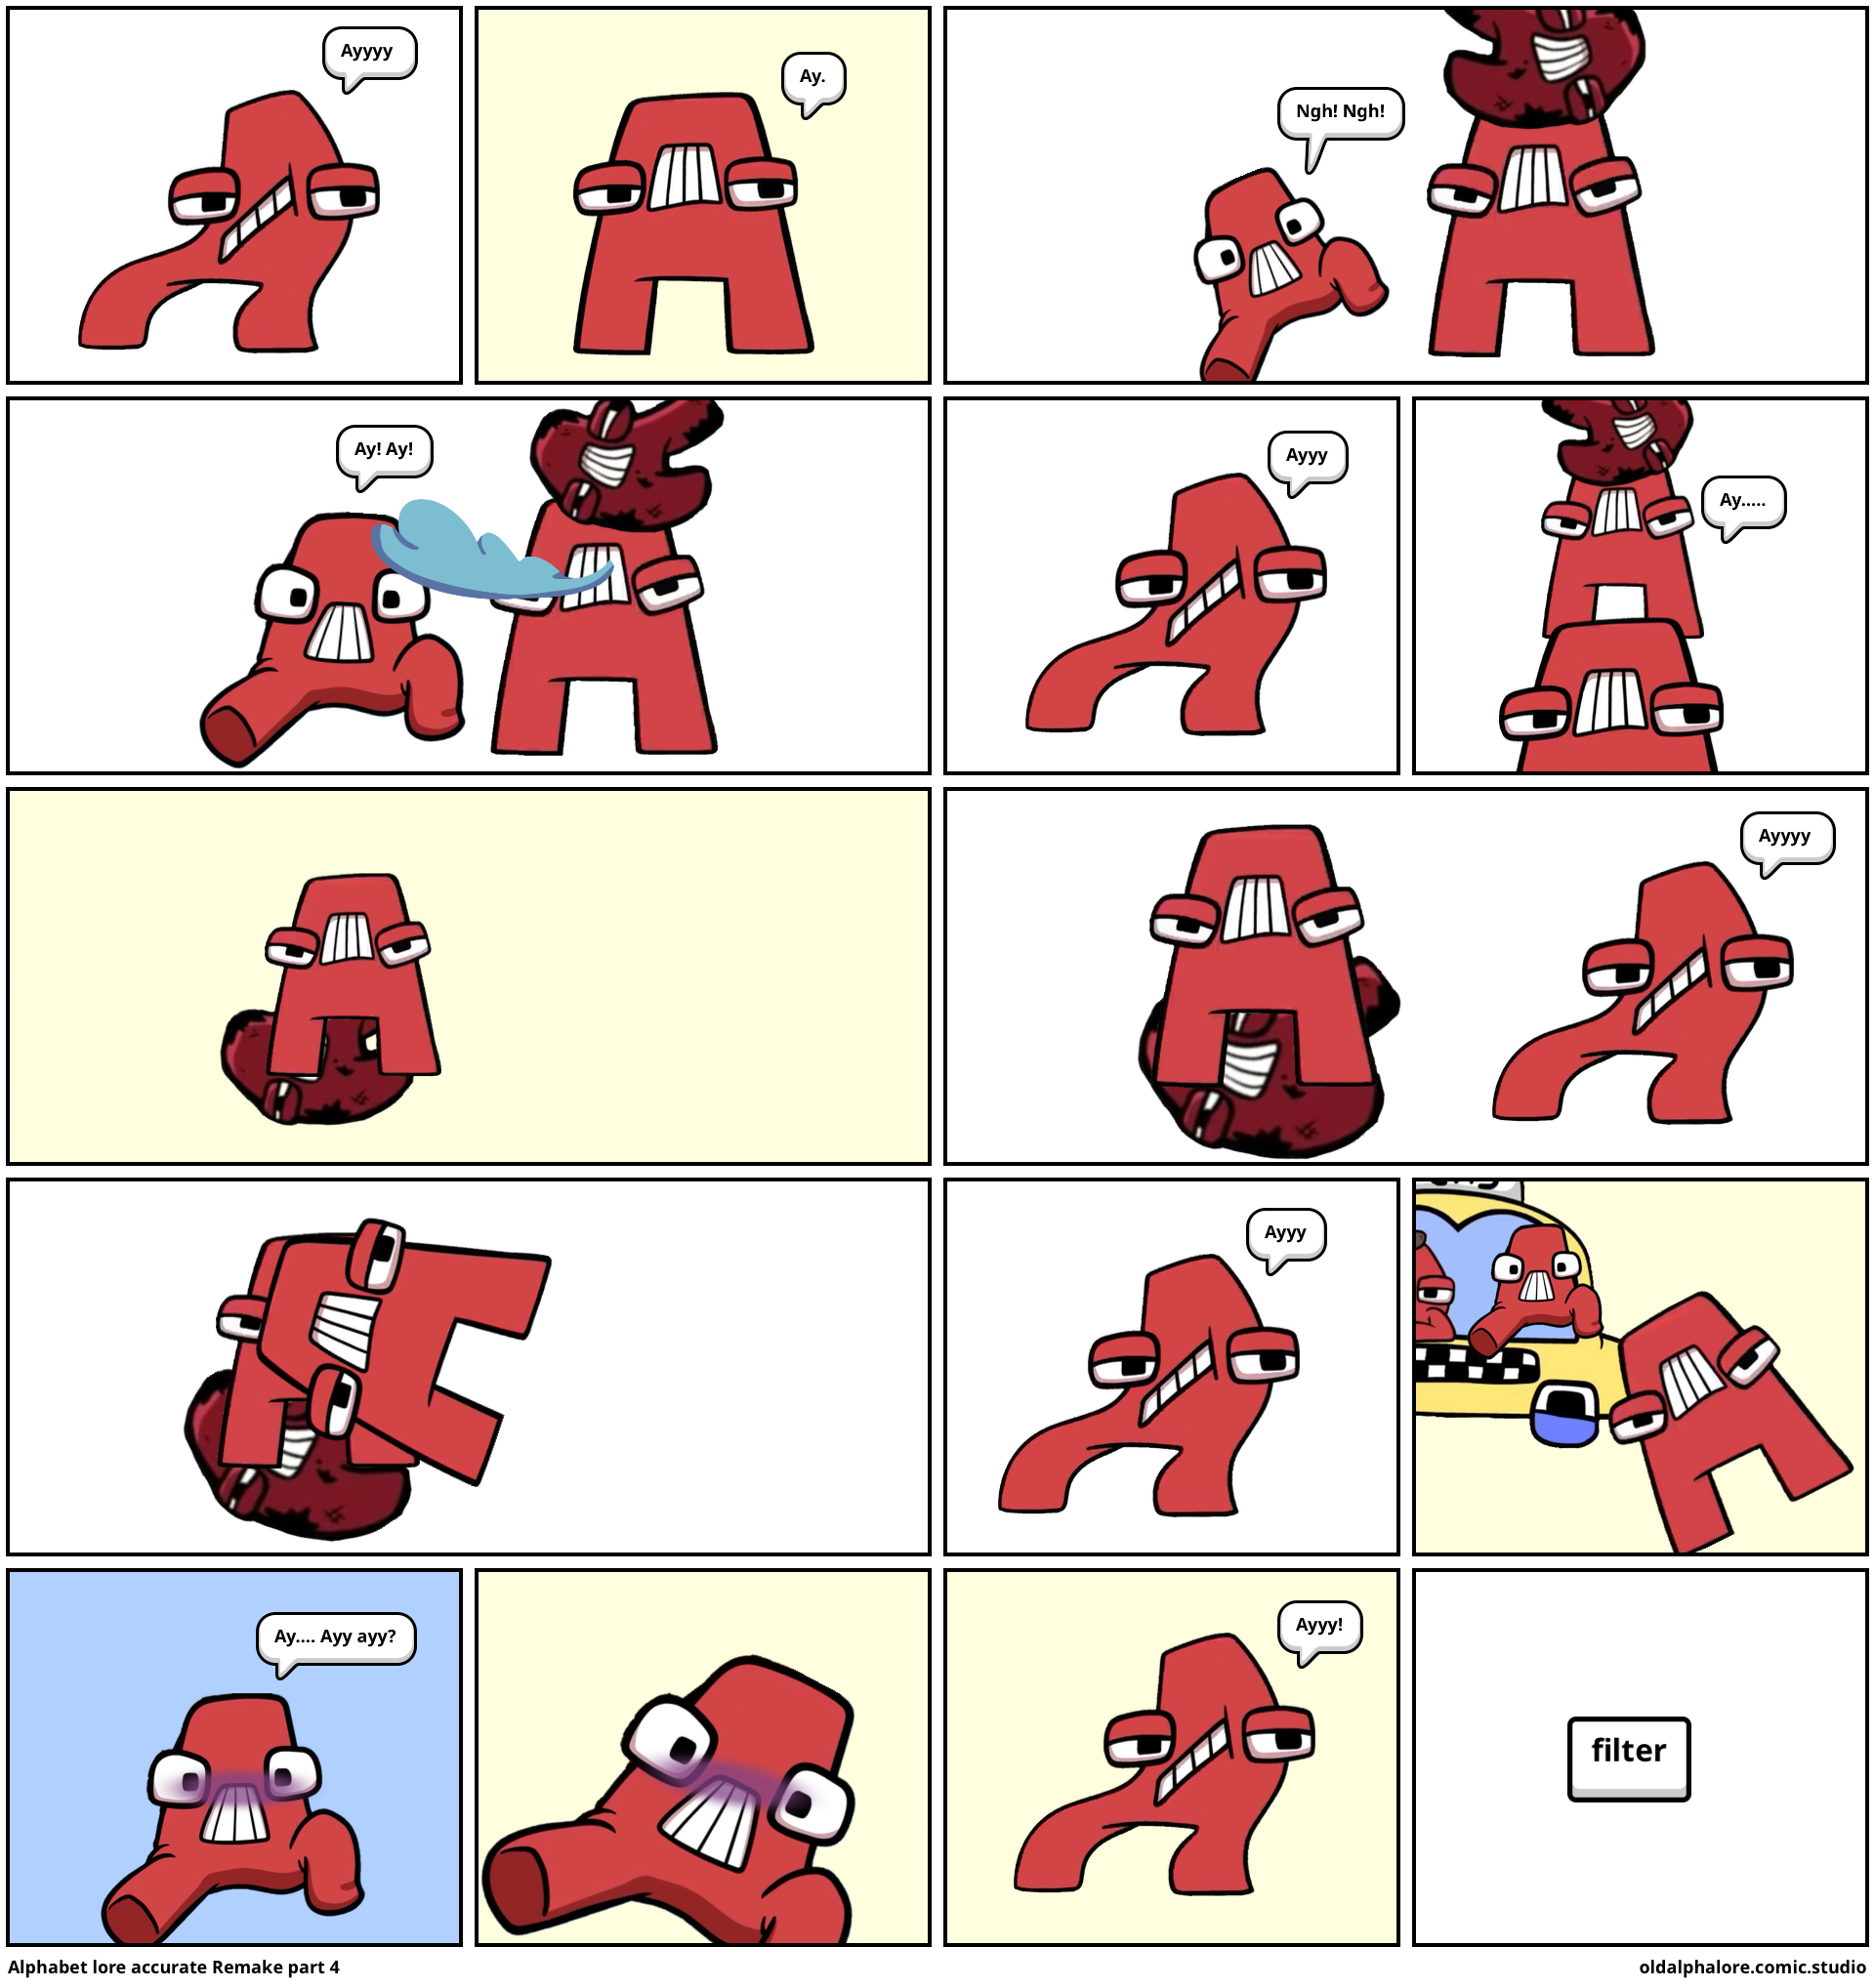 alphabet lore reimagined part 4 - Comic Studio